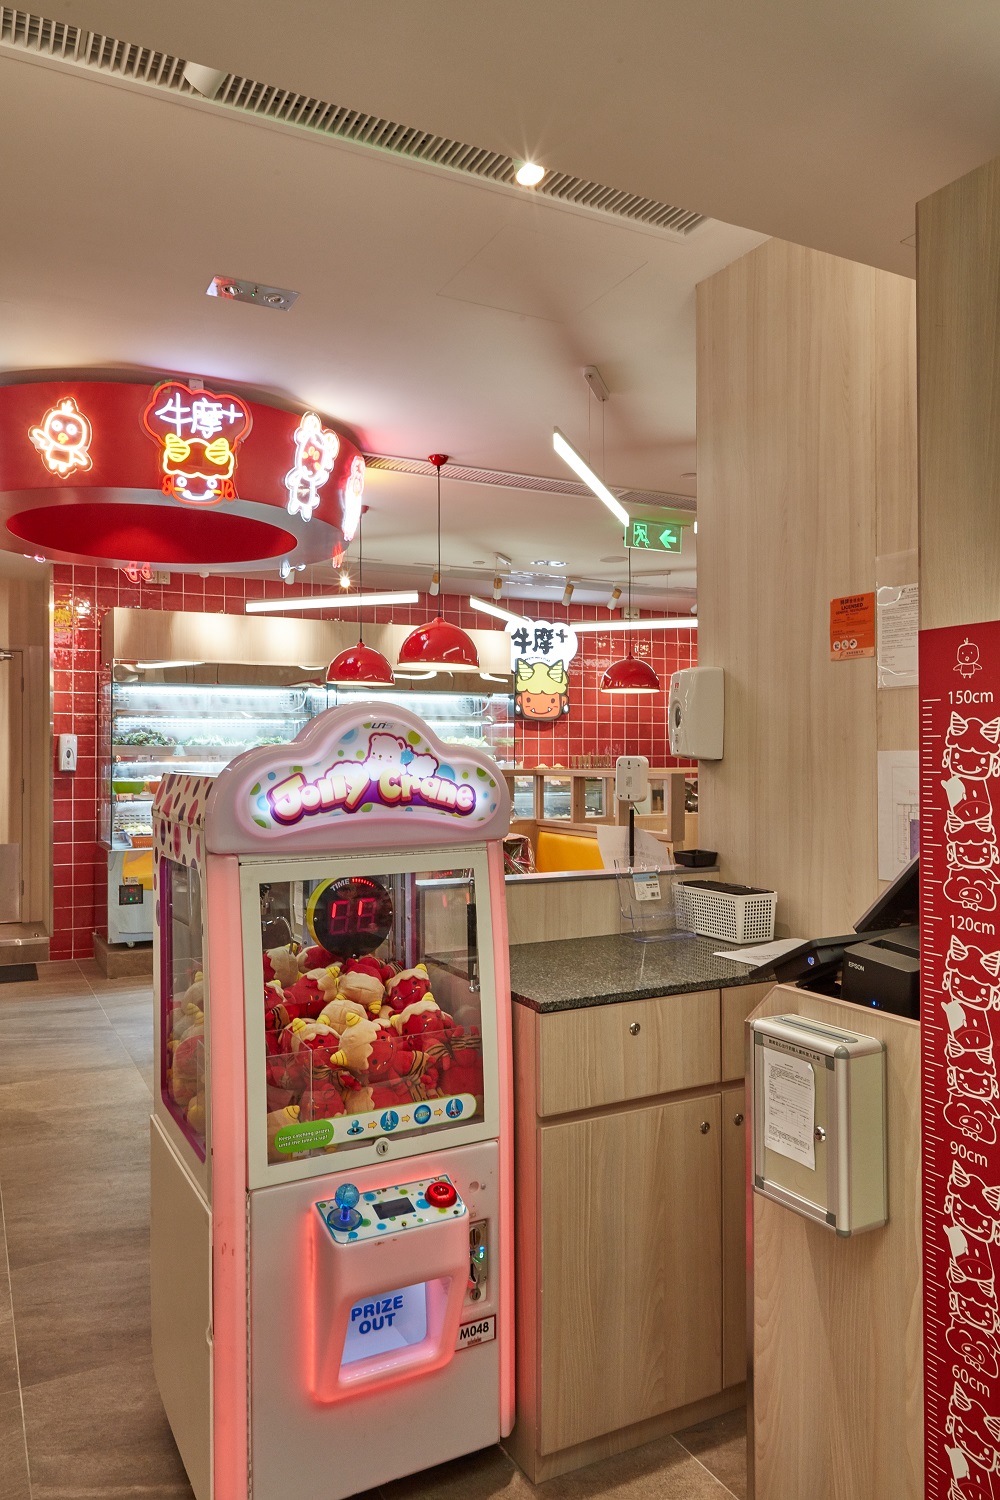 133_上水廣場_牛摩+_上水廣場店獨家推出日式涮涮鍋放題夾公仔機二合一概念.jpg